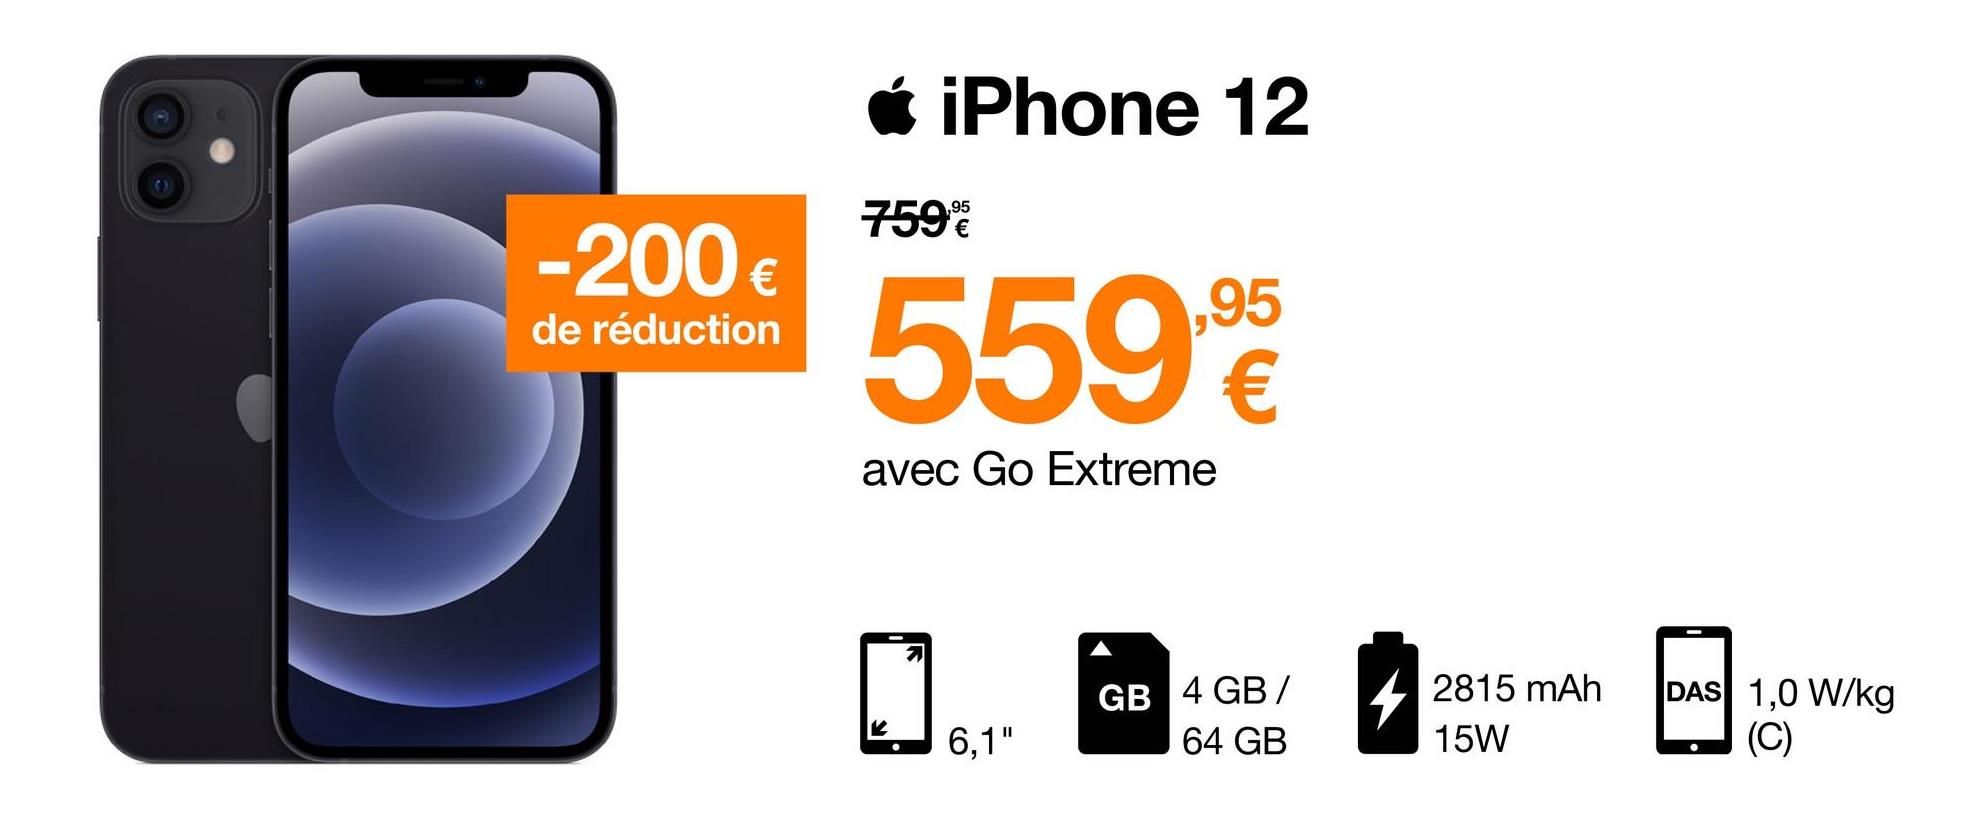 Ć iPhone 12
7598
-200 €
€
de réduction
5596
avec Go Extreme
7
GB 4 GB /
42815 mAh
DAS 1,0 W/kg
(C)
6,1"
64 GB
15W
